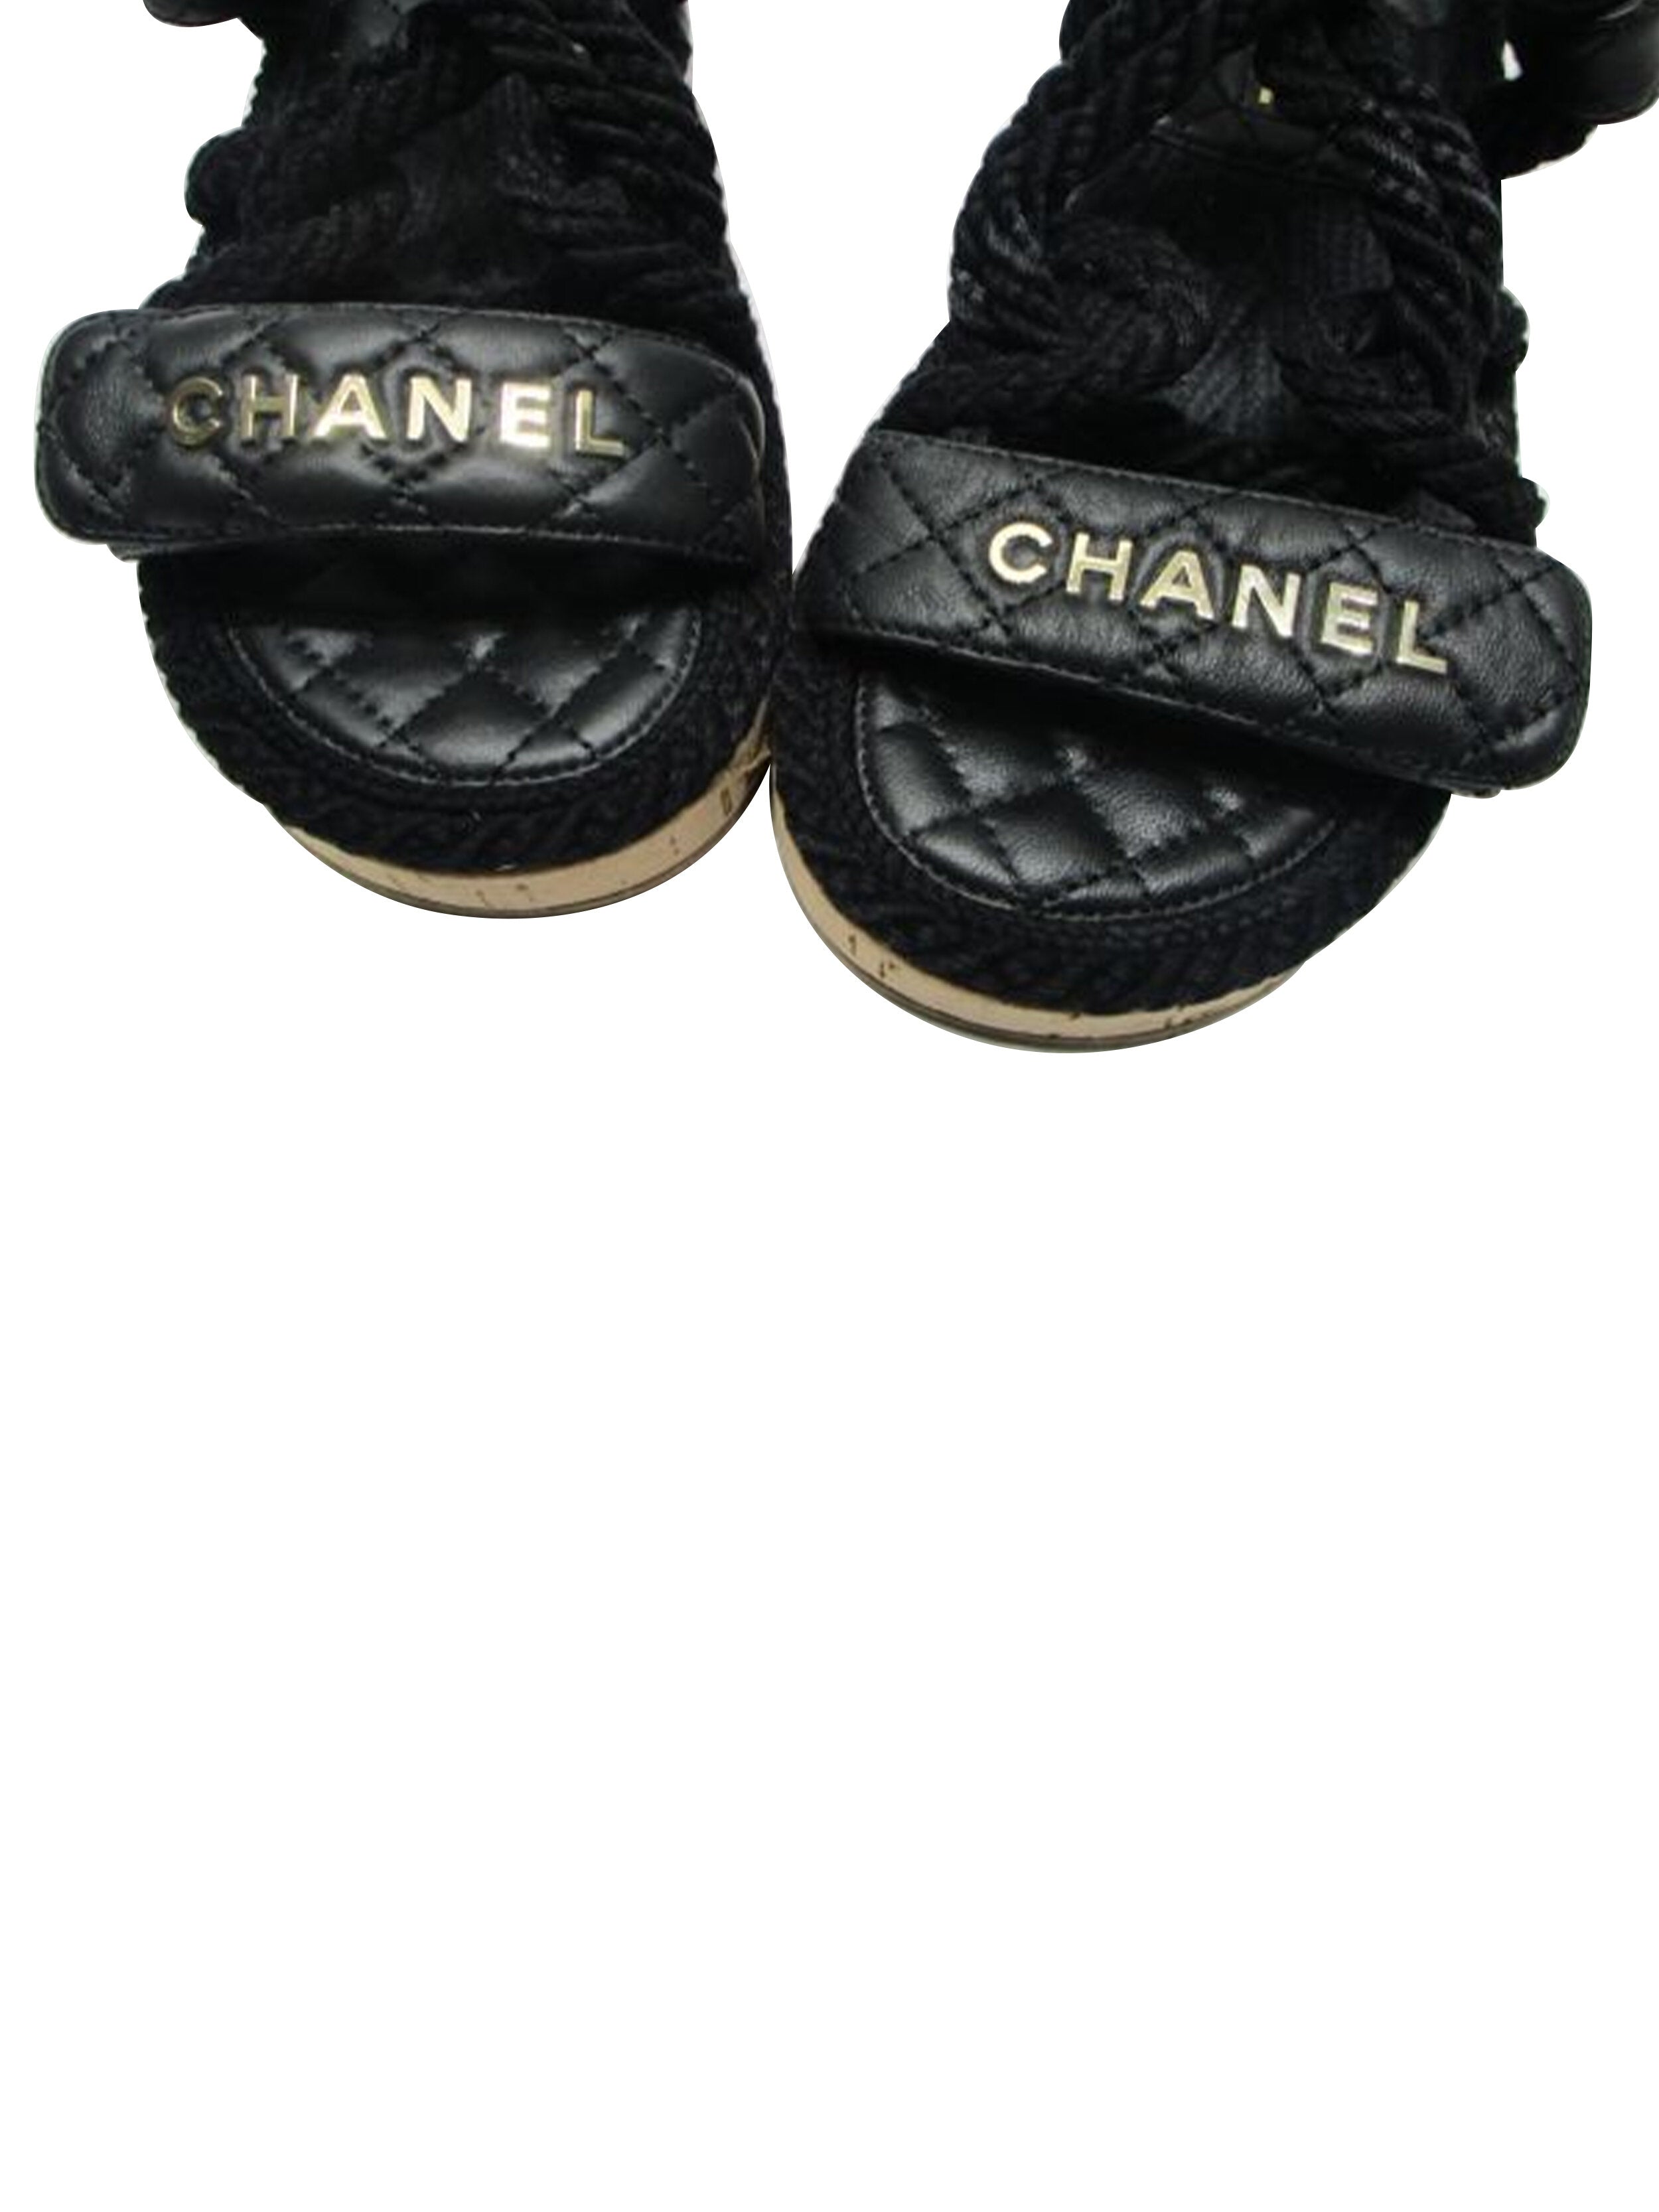 Saint Laurent Women's Nu Pieds Leather Slide Sandals - Black Size 5